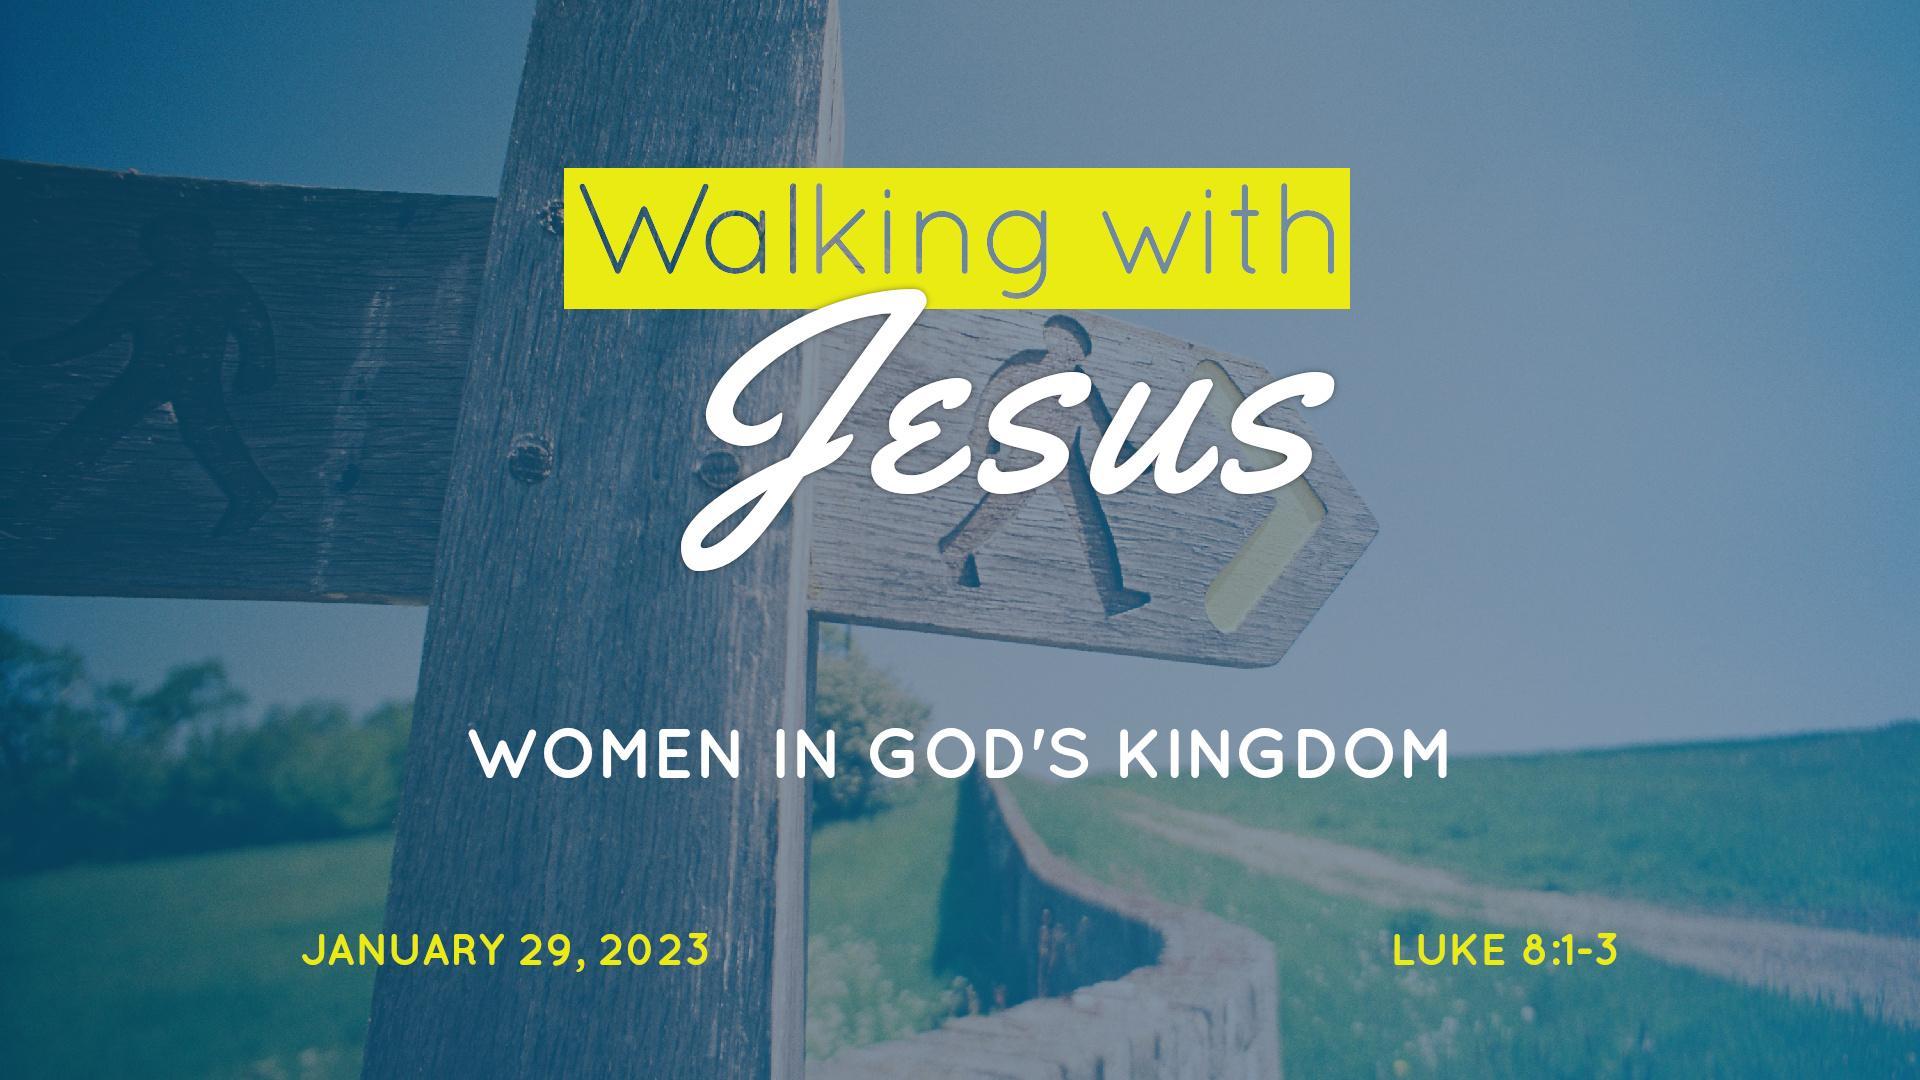 Walking with Jesus: Women in God's Kingdom - sermon by Dr. John L. Rothra